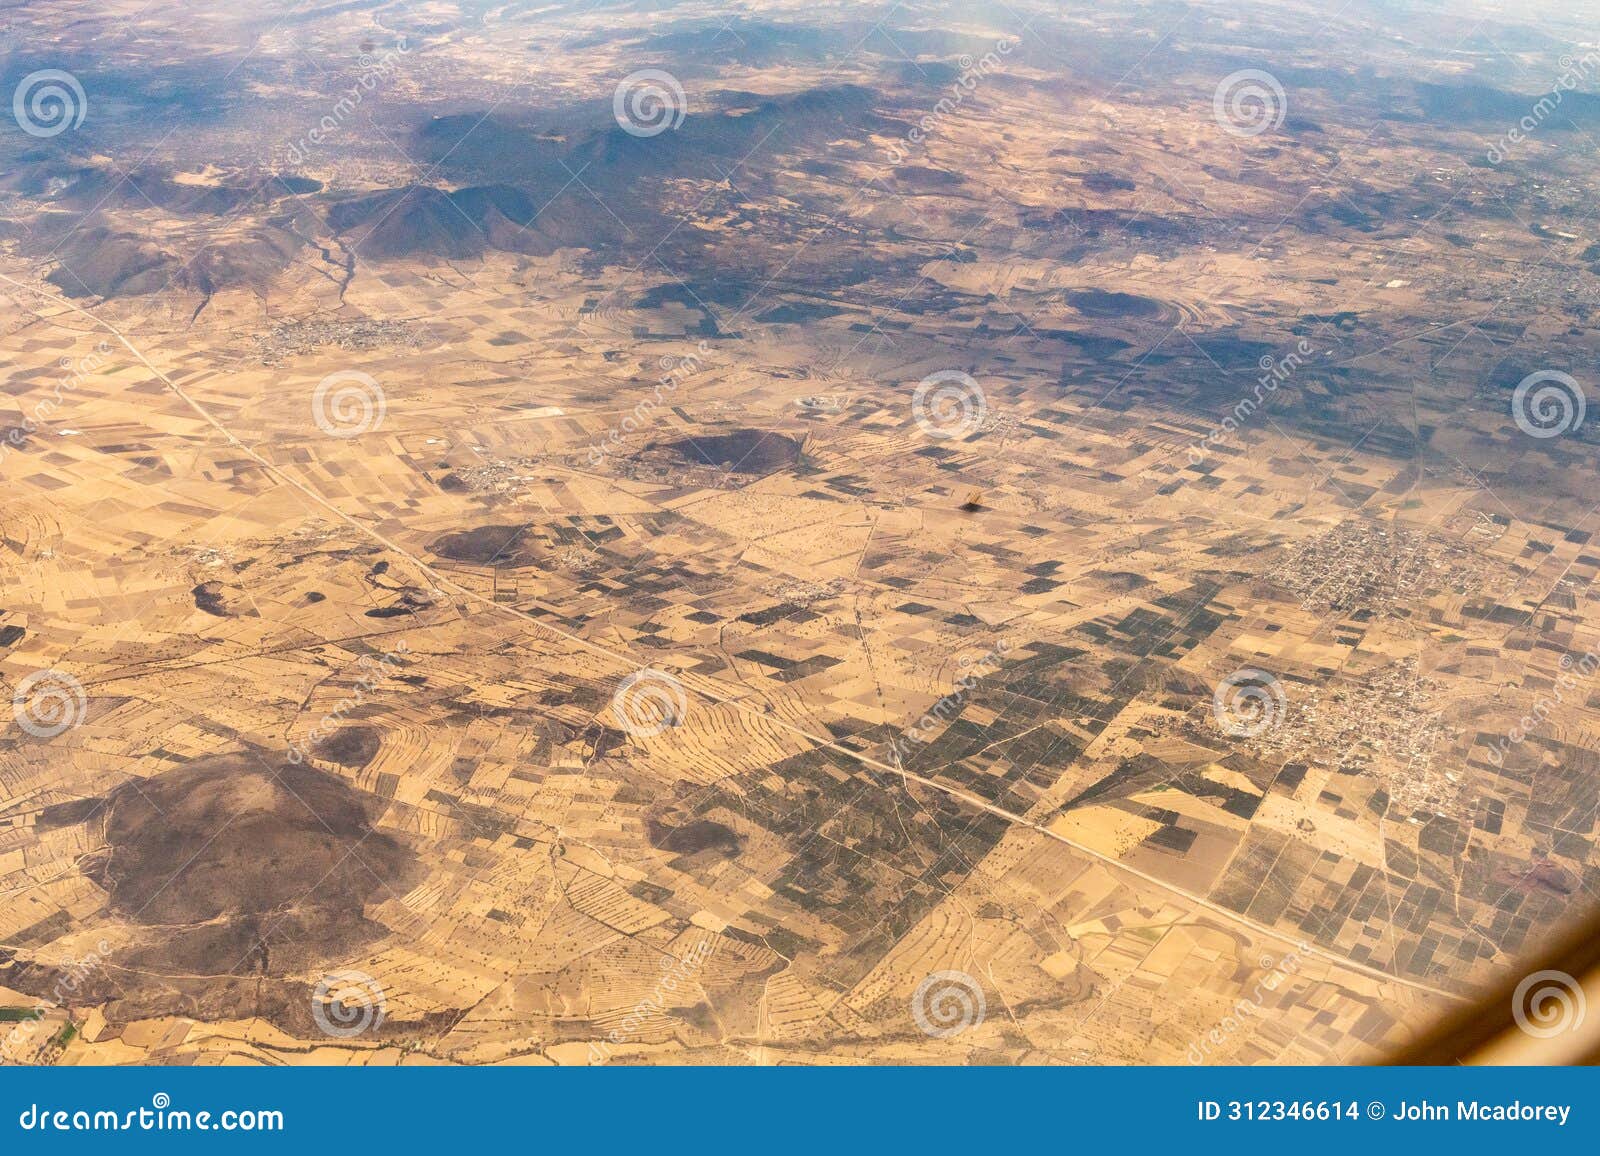 aerial view of farmland in mexico north of mexico city cdmx